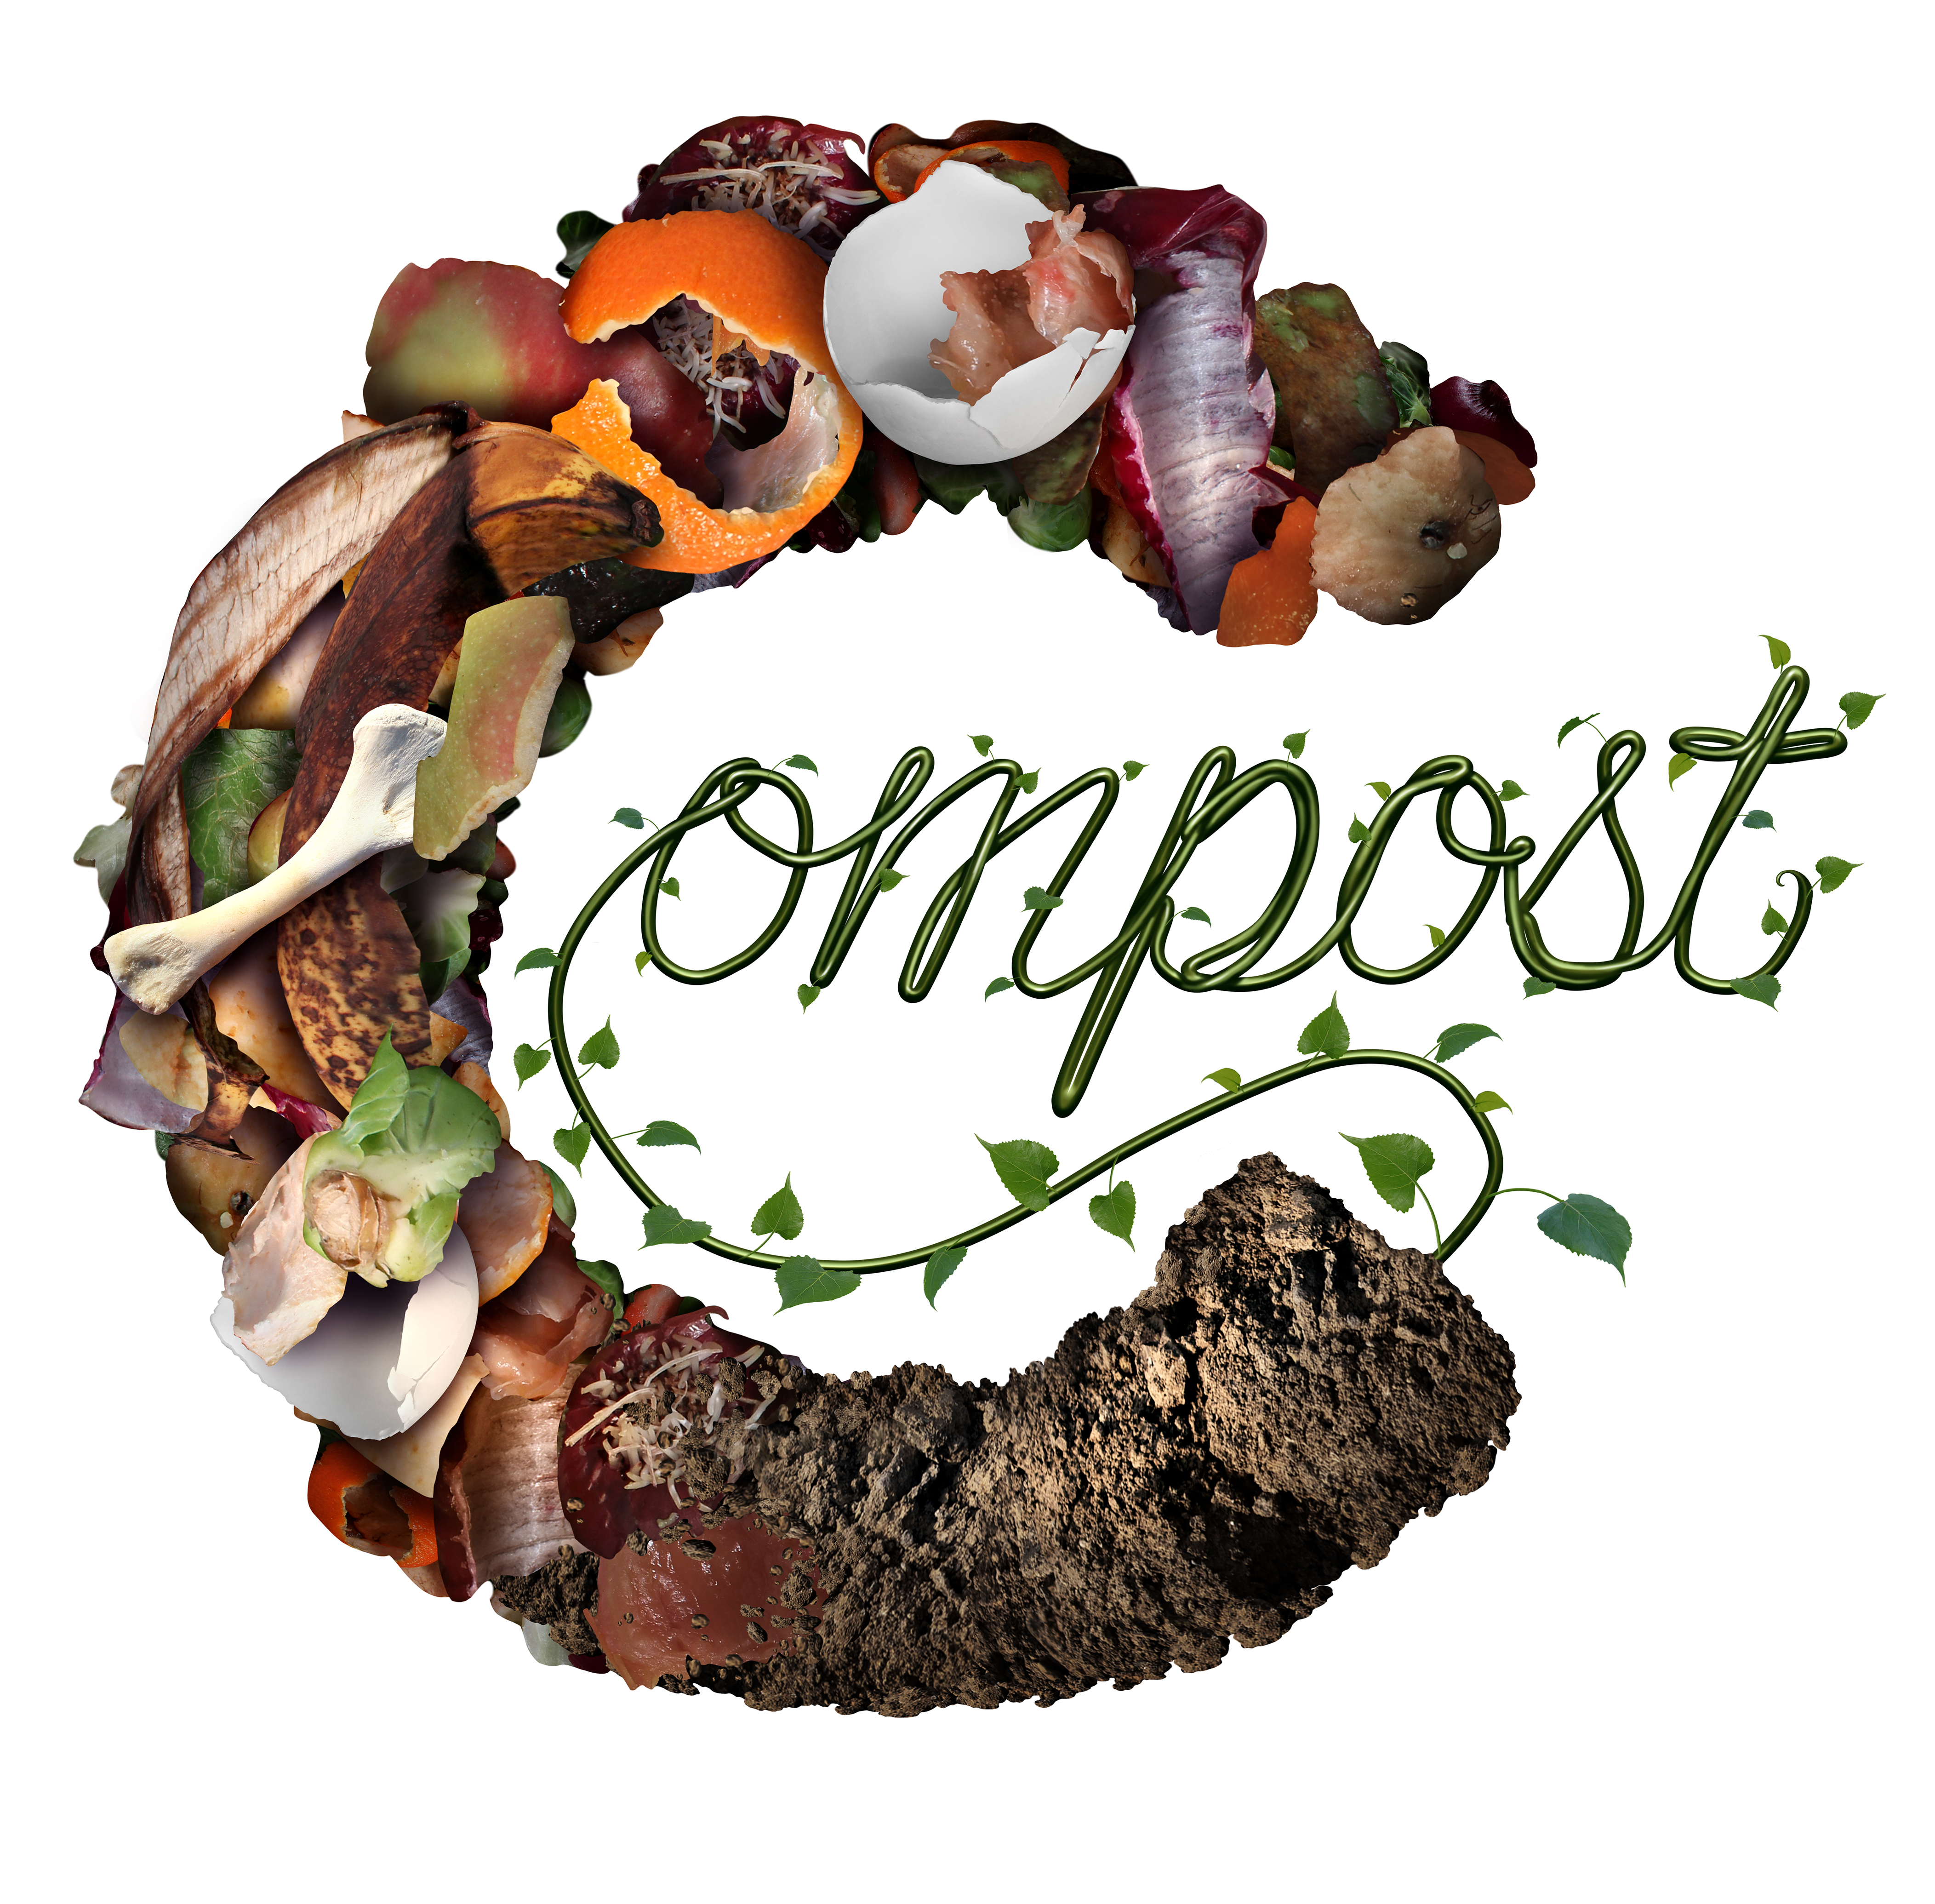 Composting in Leonia